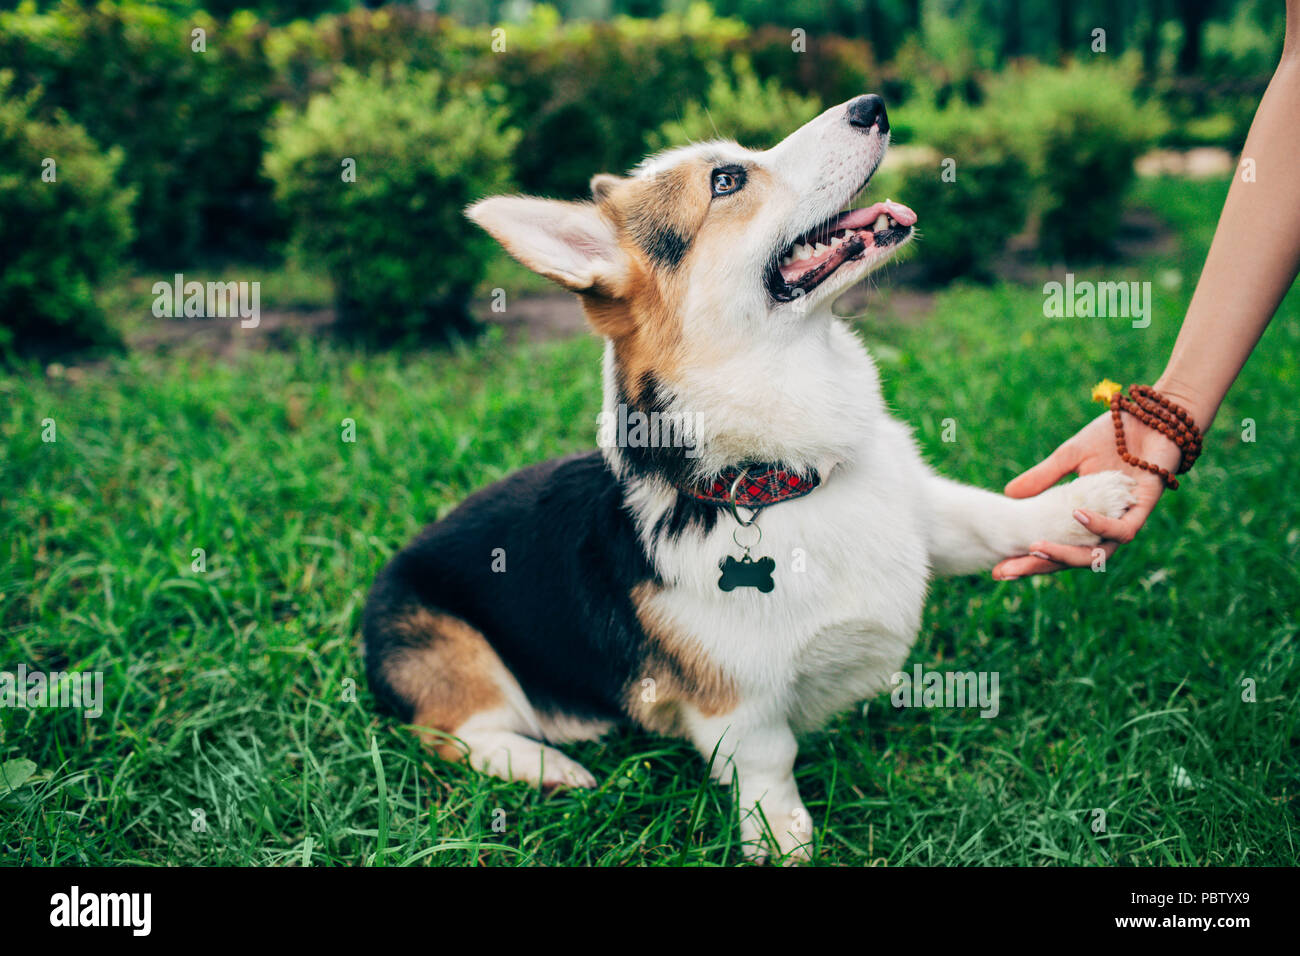 Welsh Corgi perro dando paw su propietaria, la mano del hombre y pata de perro. Foto de stock